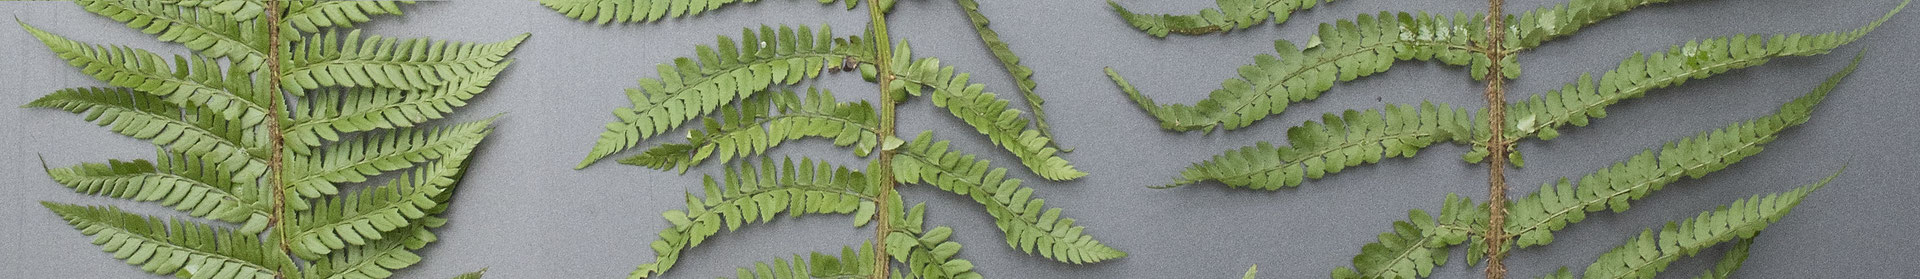 Von links nach rechts: Gelappter Schildfarn  •  Polystichum aculeatum, Polystichum × bicknellii, Borstiger Schildfarn  •  Polystichum setiferum.